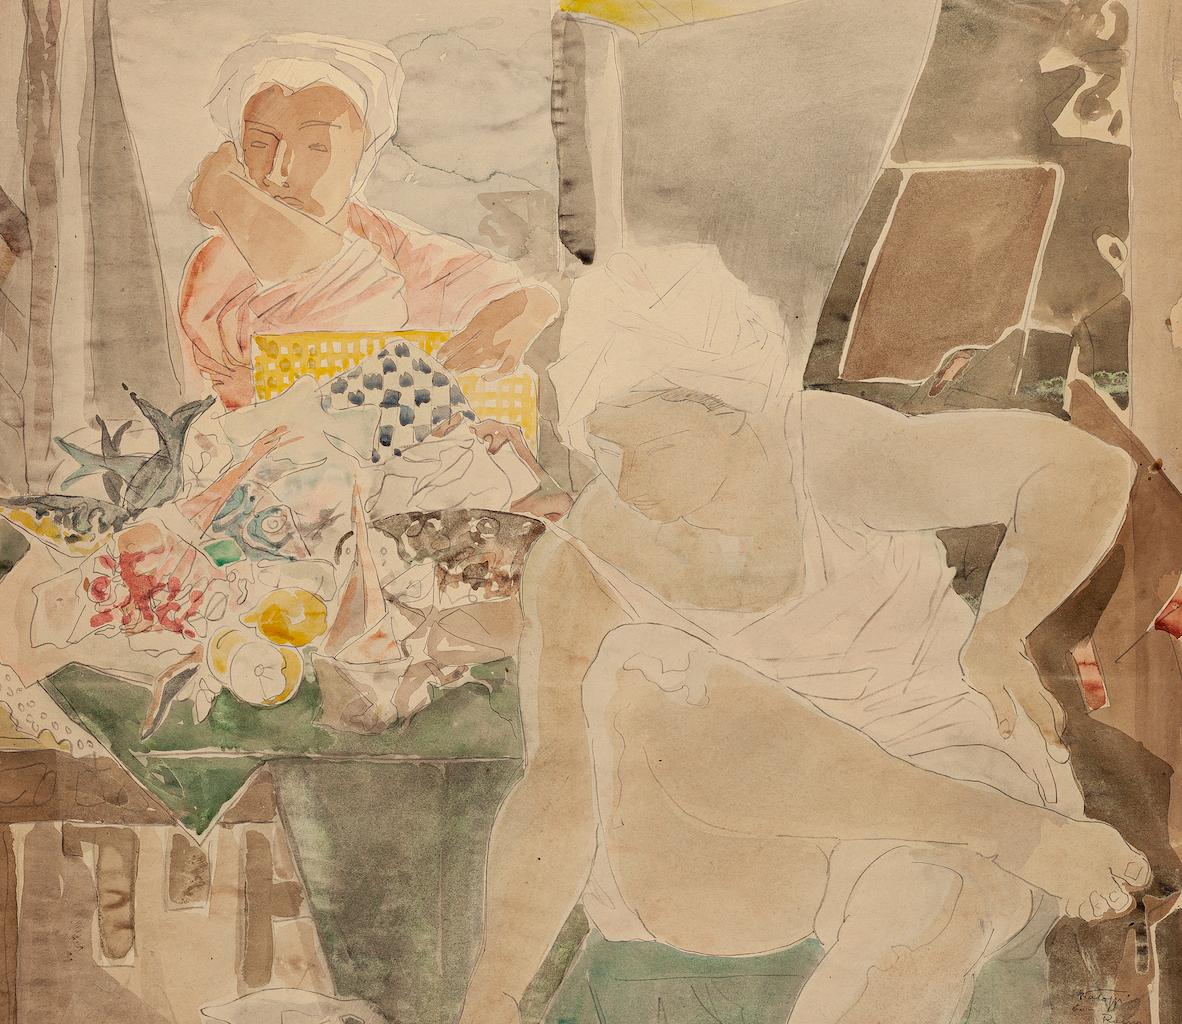 Frauen ist eine Originalzeichnung in Mischtechnik auf Papier von 1960.

Rechts unten handsigniert und datiert.

Condit: alt und gut, mit Ausnahme einiger Faltungen an den Rändern.

Hier stellt das Kunstwerk zwei Frauen in harmonischen Farben dar.